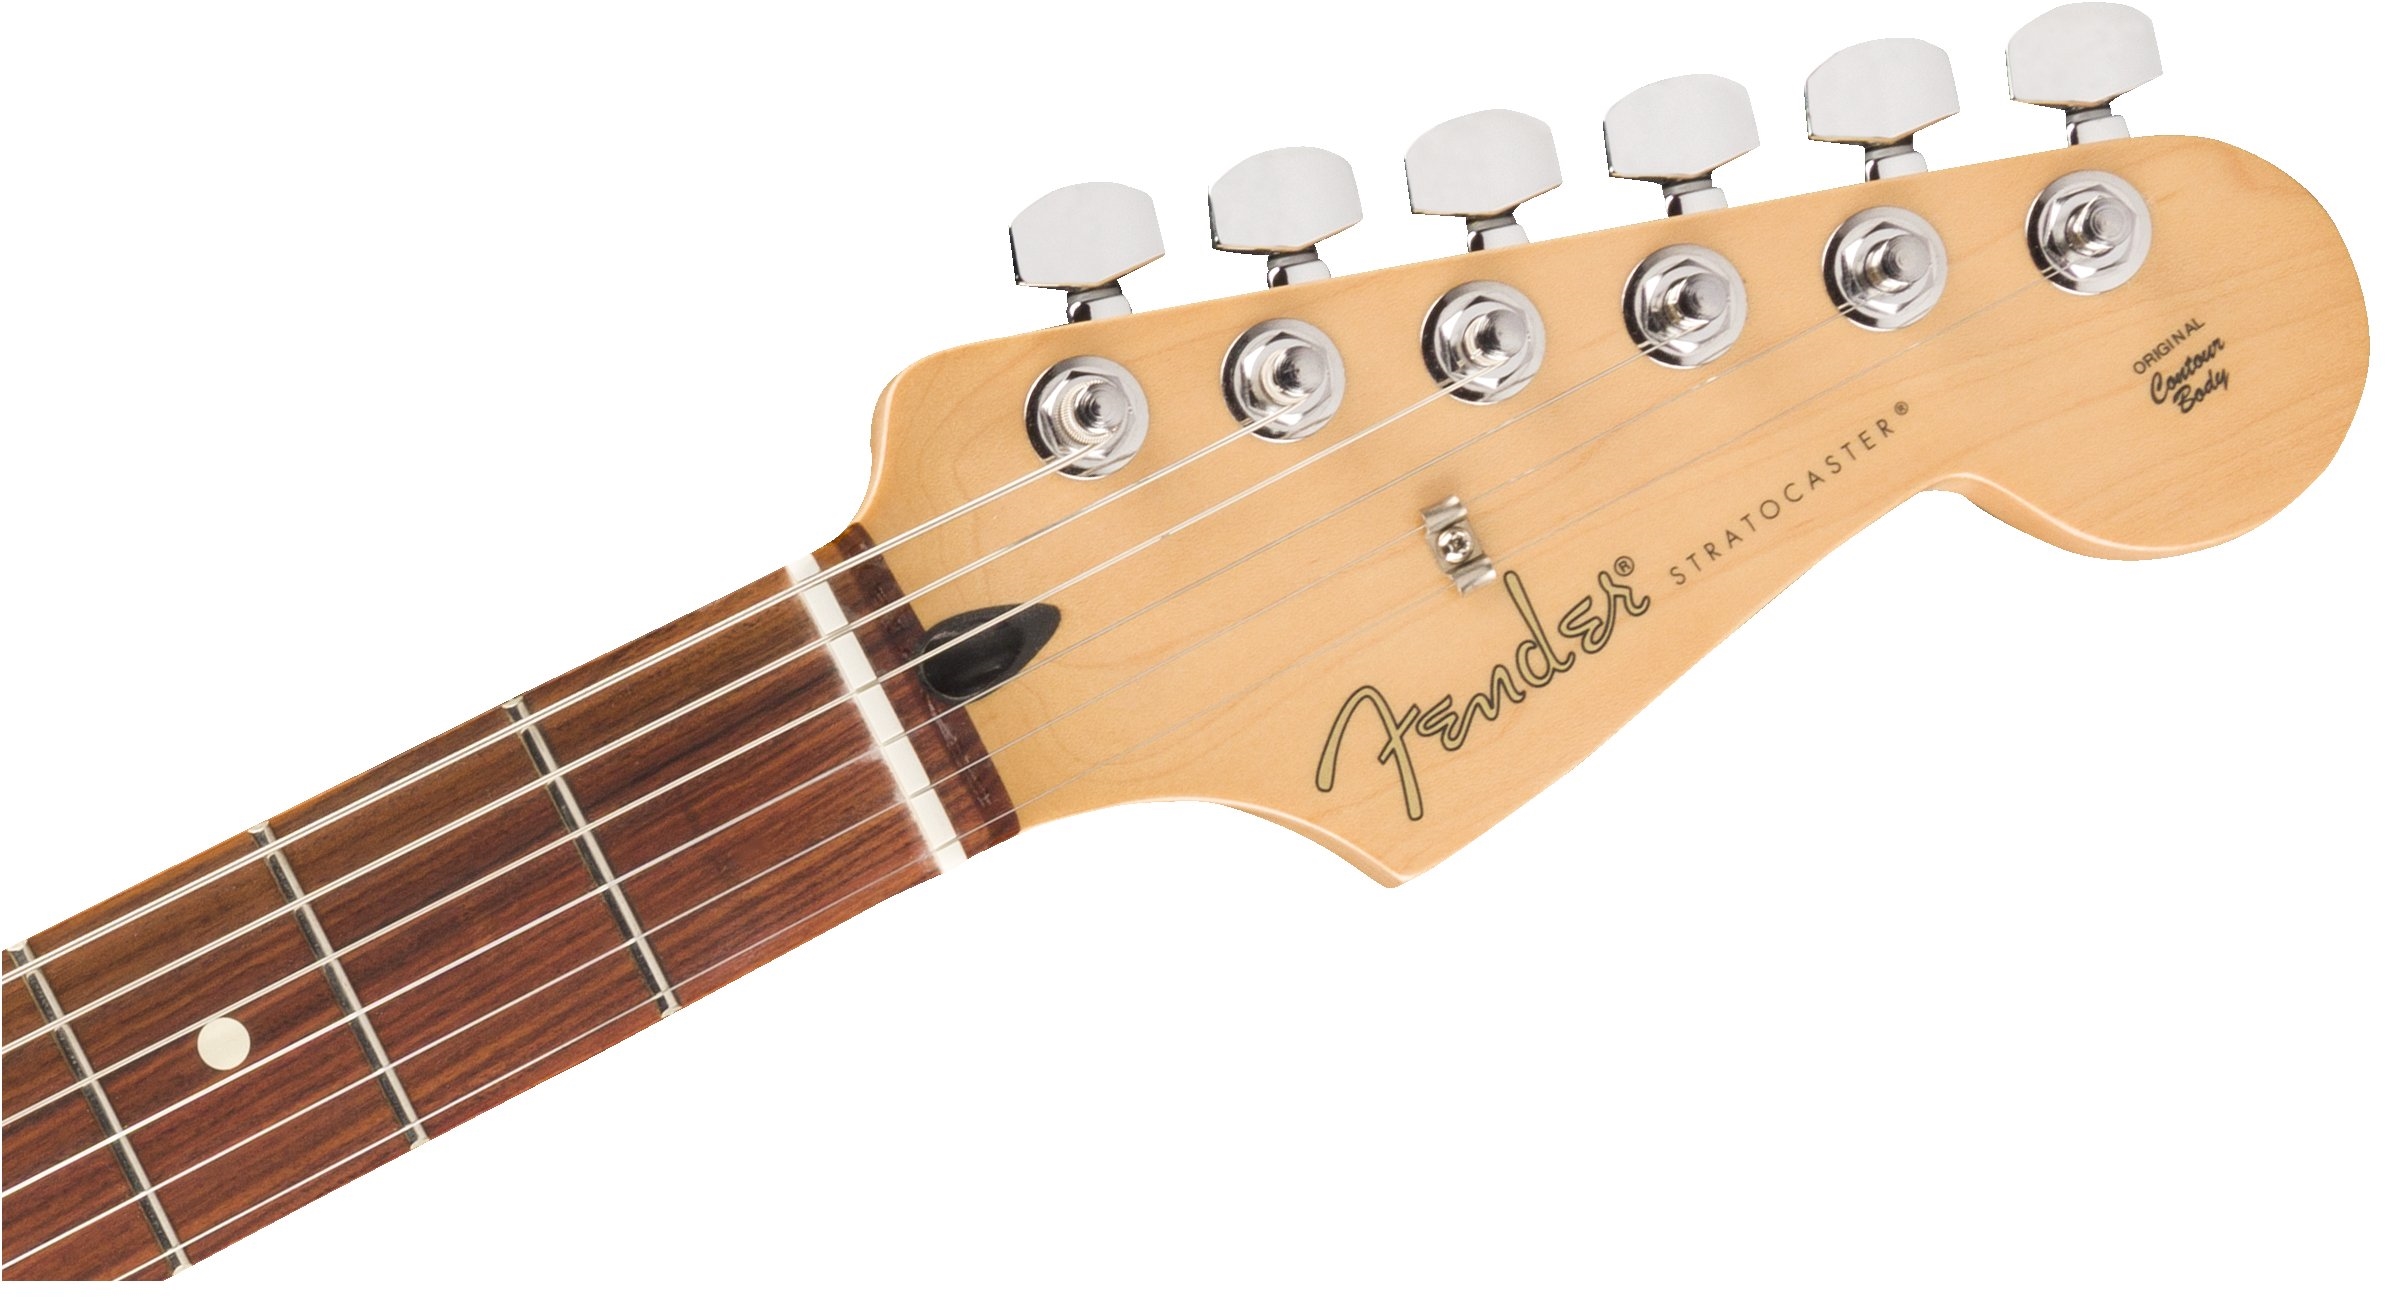 Fender Strat Player Ltd Mex 3s Trem Pf - Fiesta Red - Elektrische gitaar in Str-vorm - Variation 4